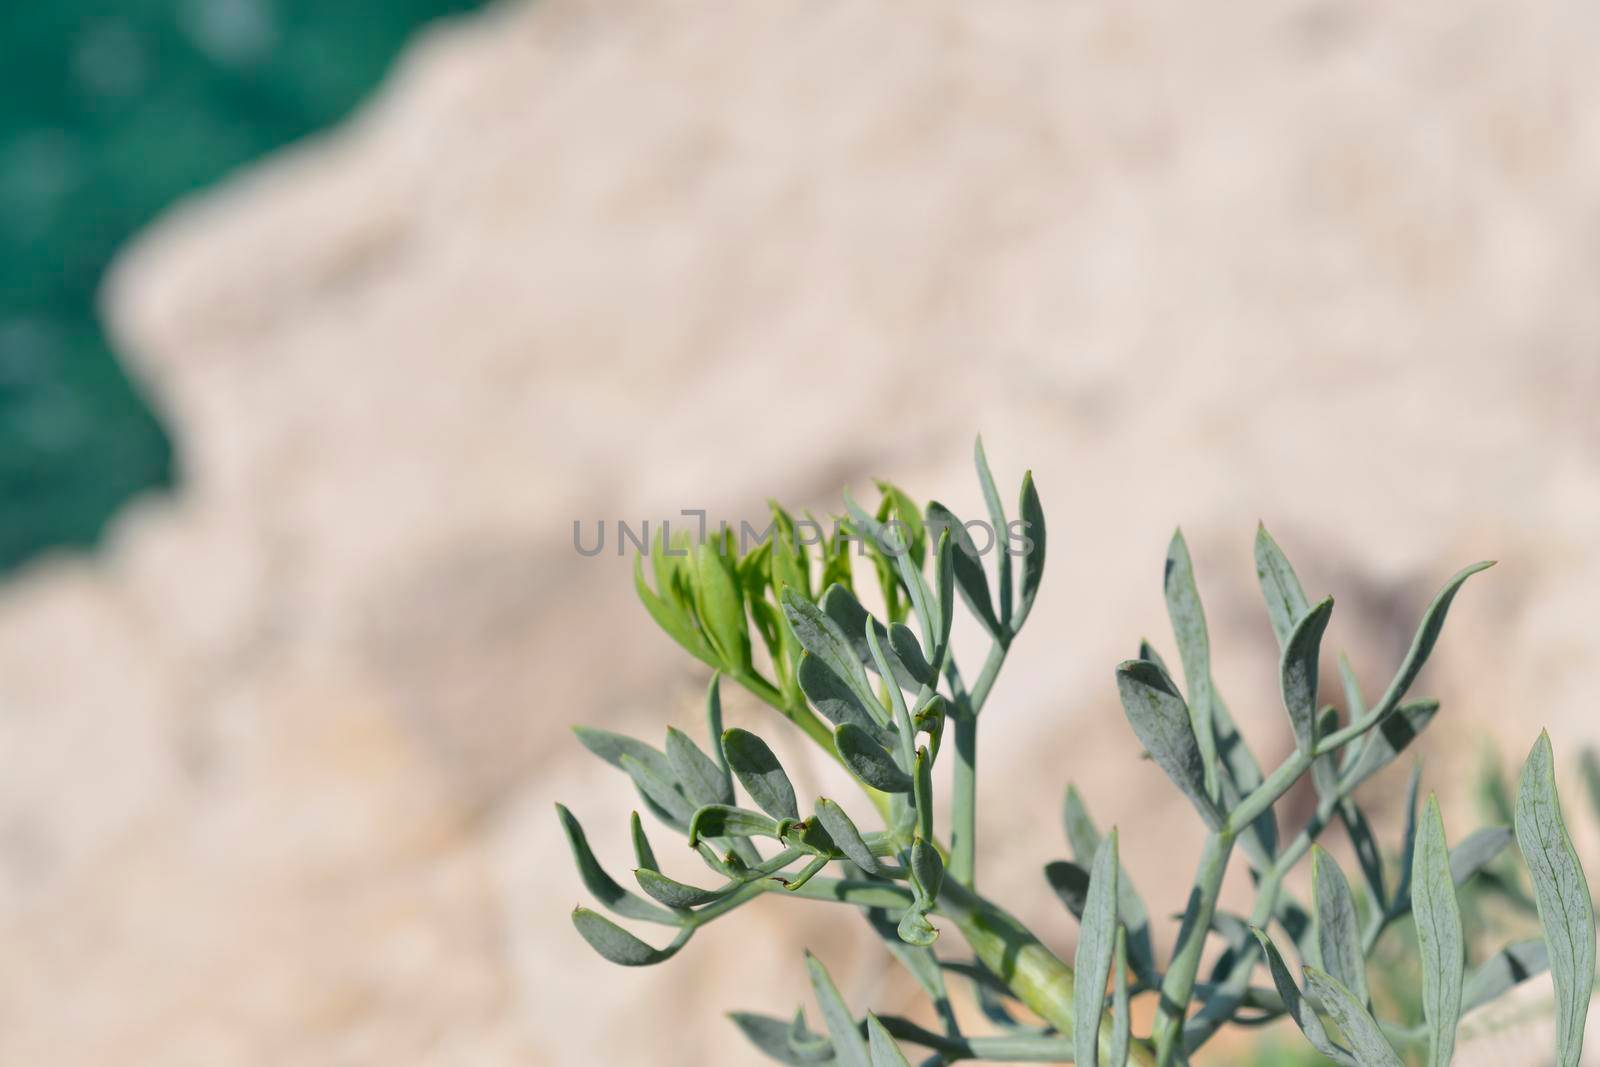 Sea fennel leaves - Latin name - Crithmum maritimum